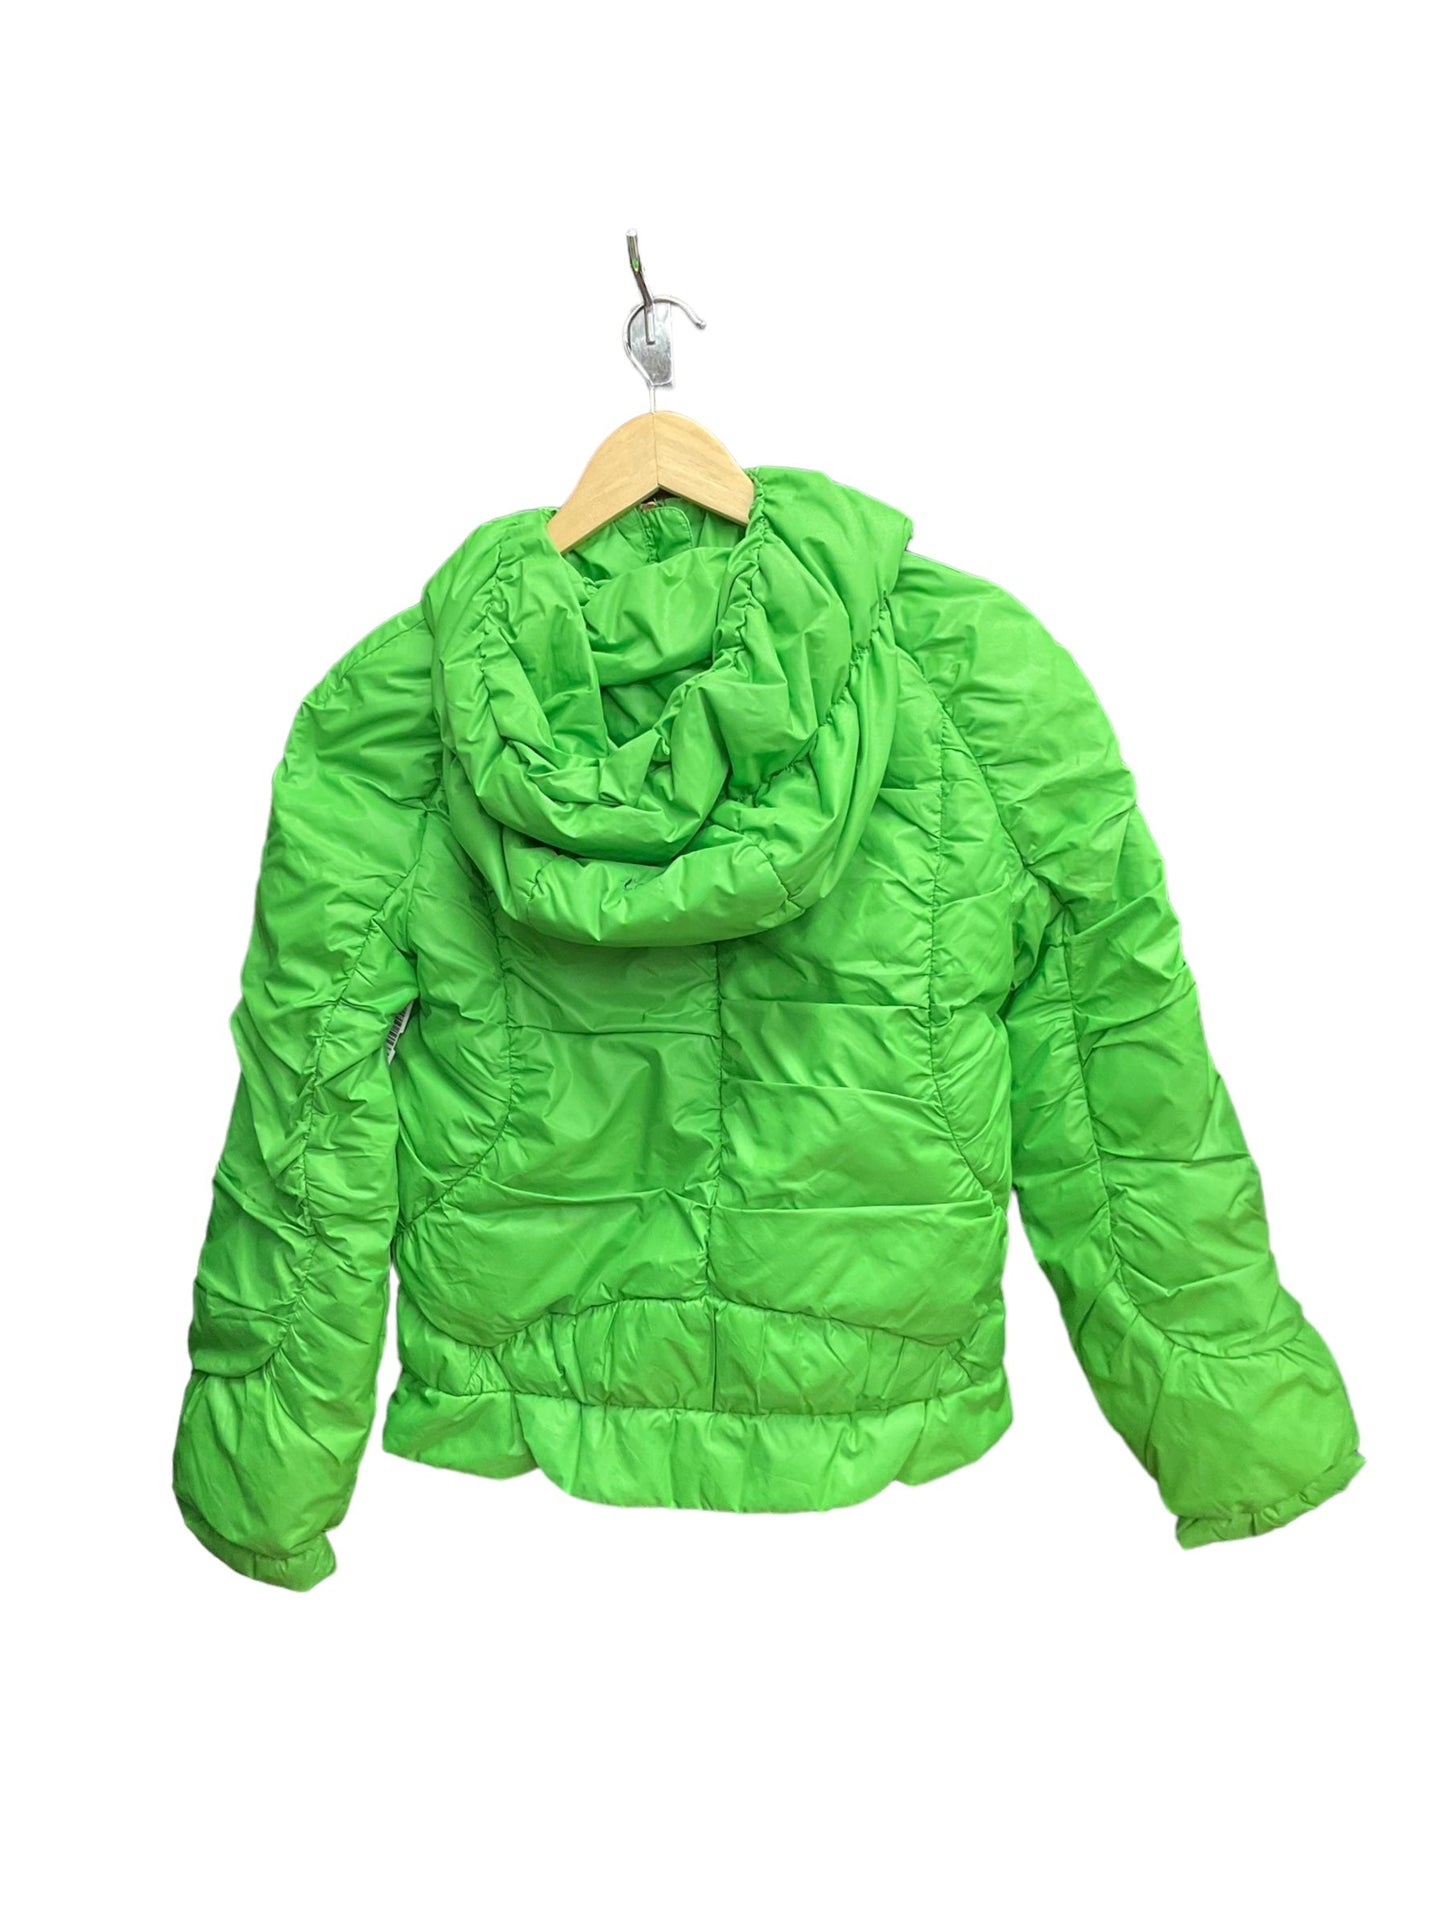 Green Coat Parka Clothes Mentor, Size L